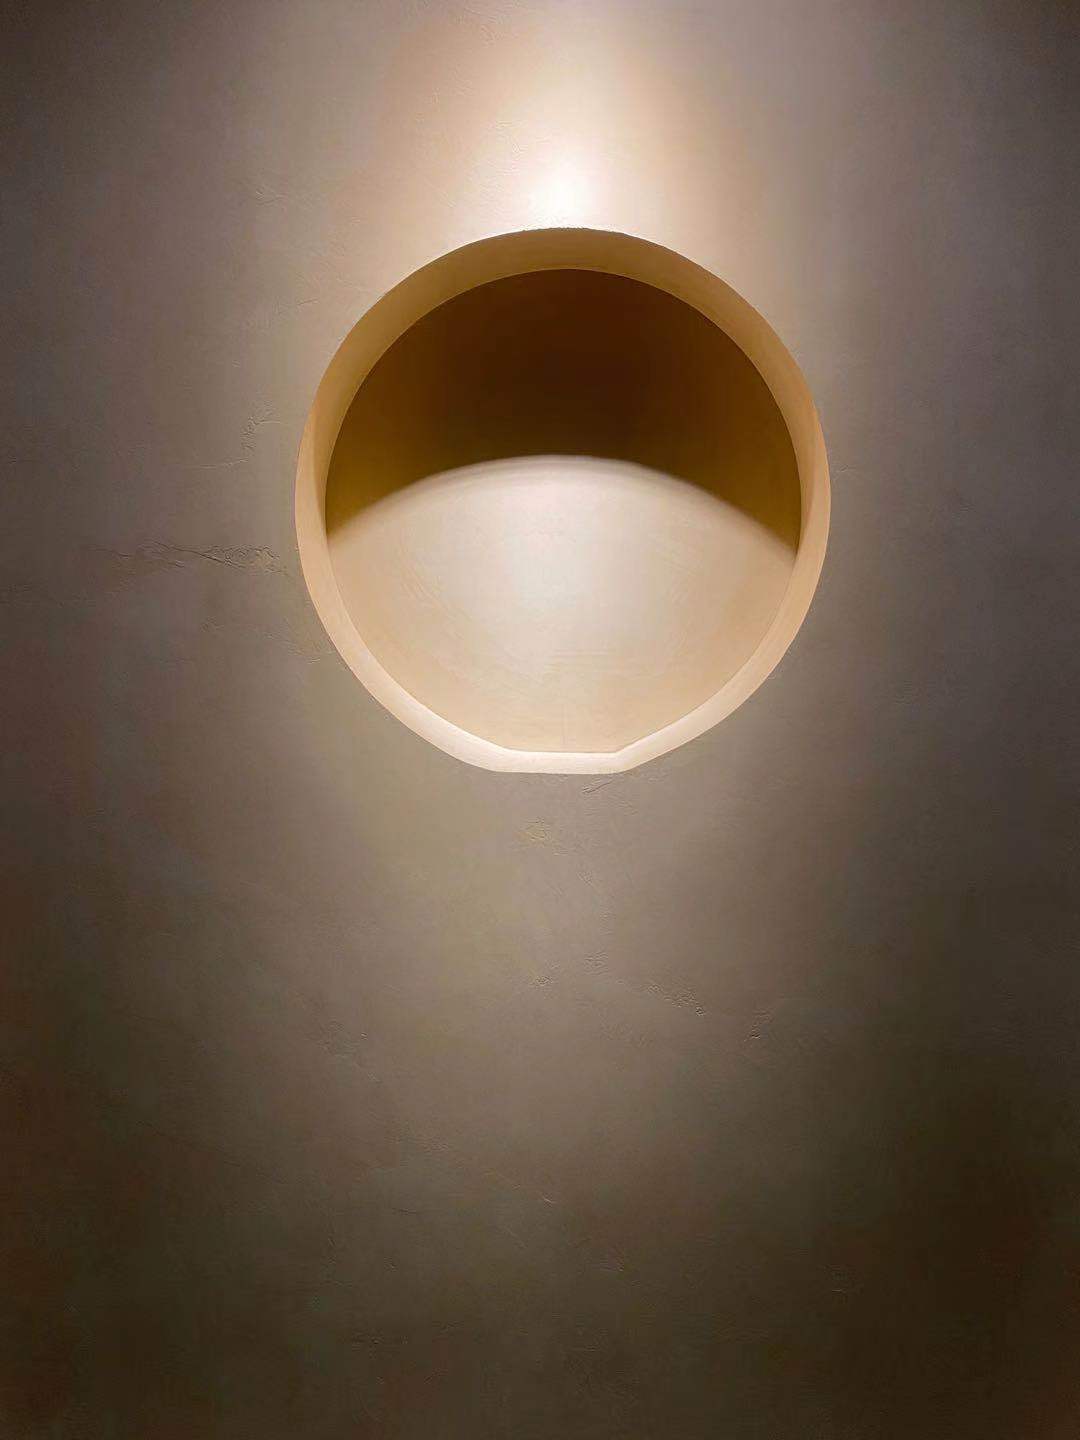 Microcemento trên bức tường của một ngôi nhà theo phong cách tối giản với ánh sáng làm tăng cường lớp phủ